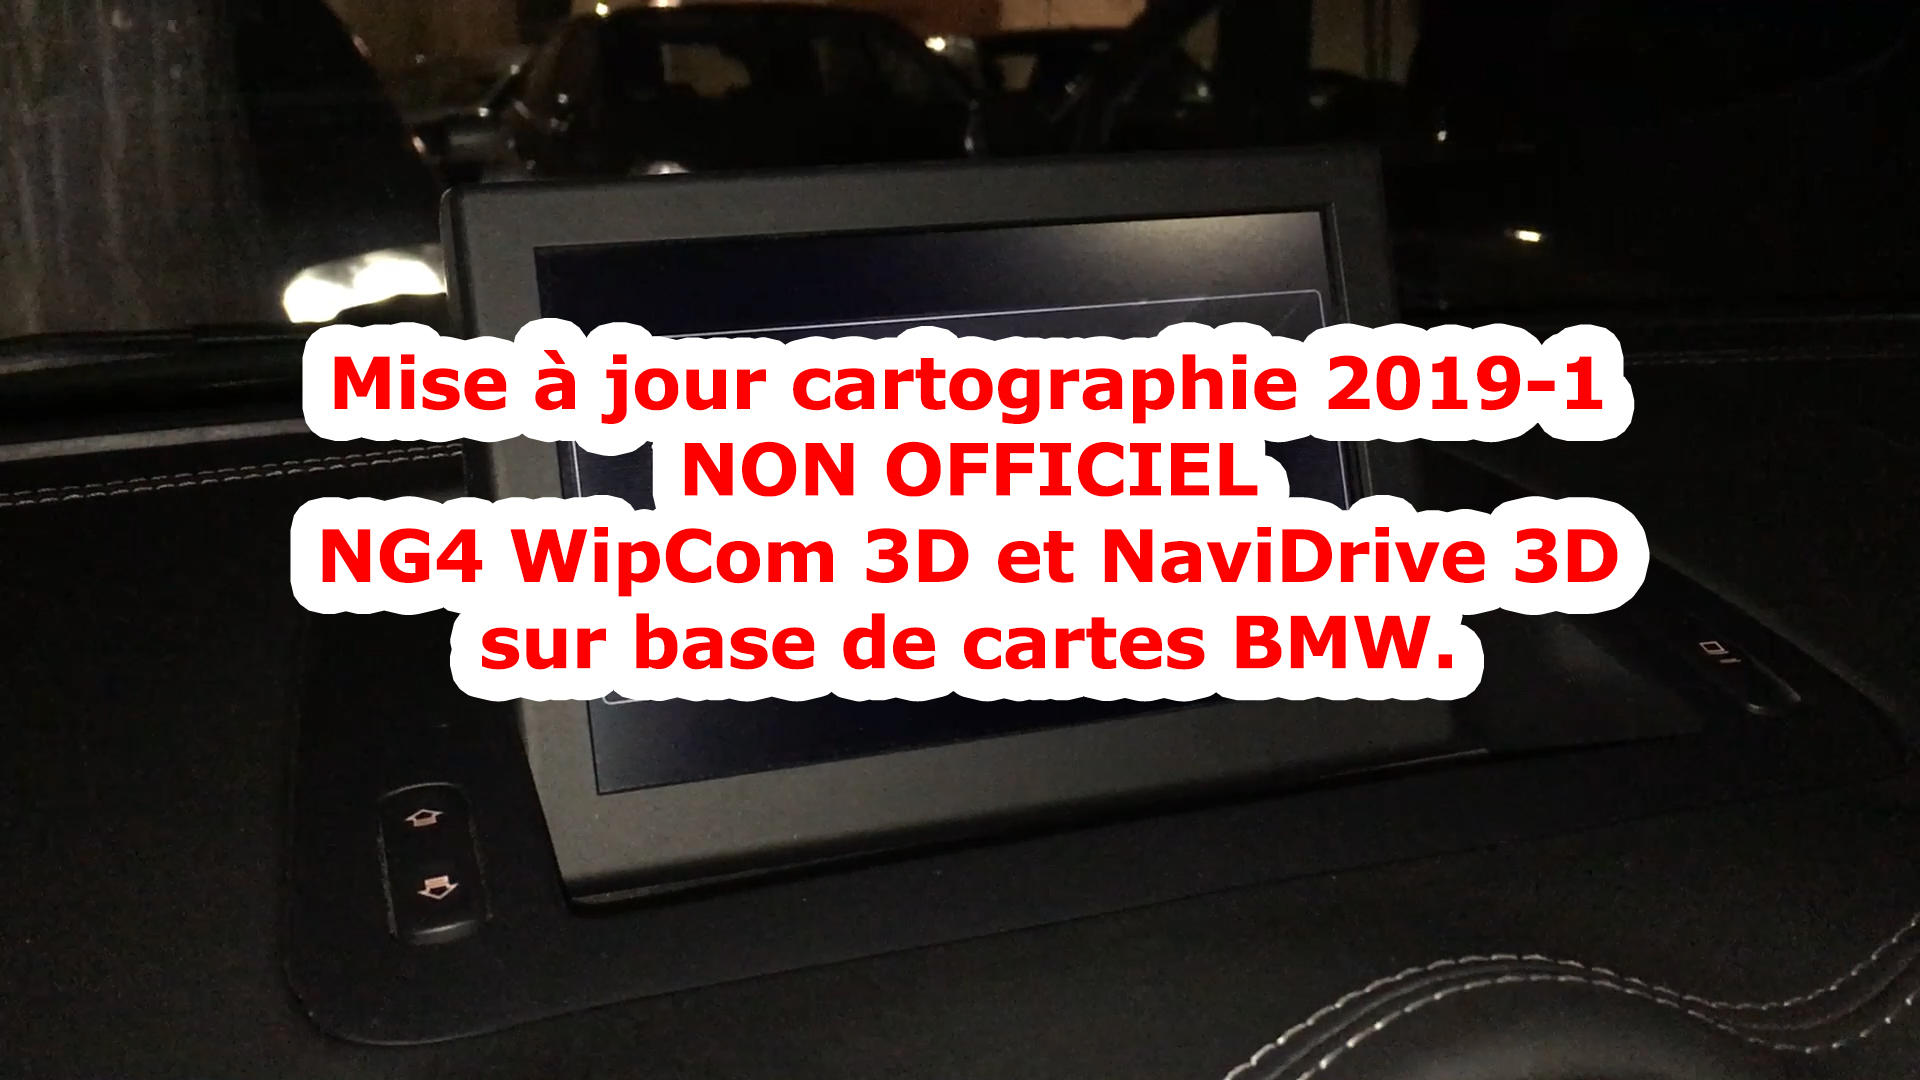 Mise à jour/upgrade cartographie 2019-1 WipCom 3D/NaviDrive 3D ...